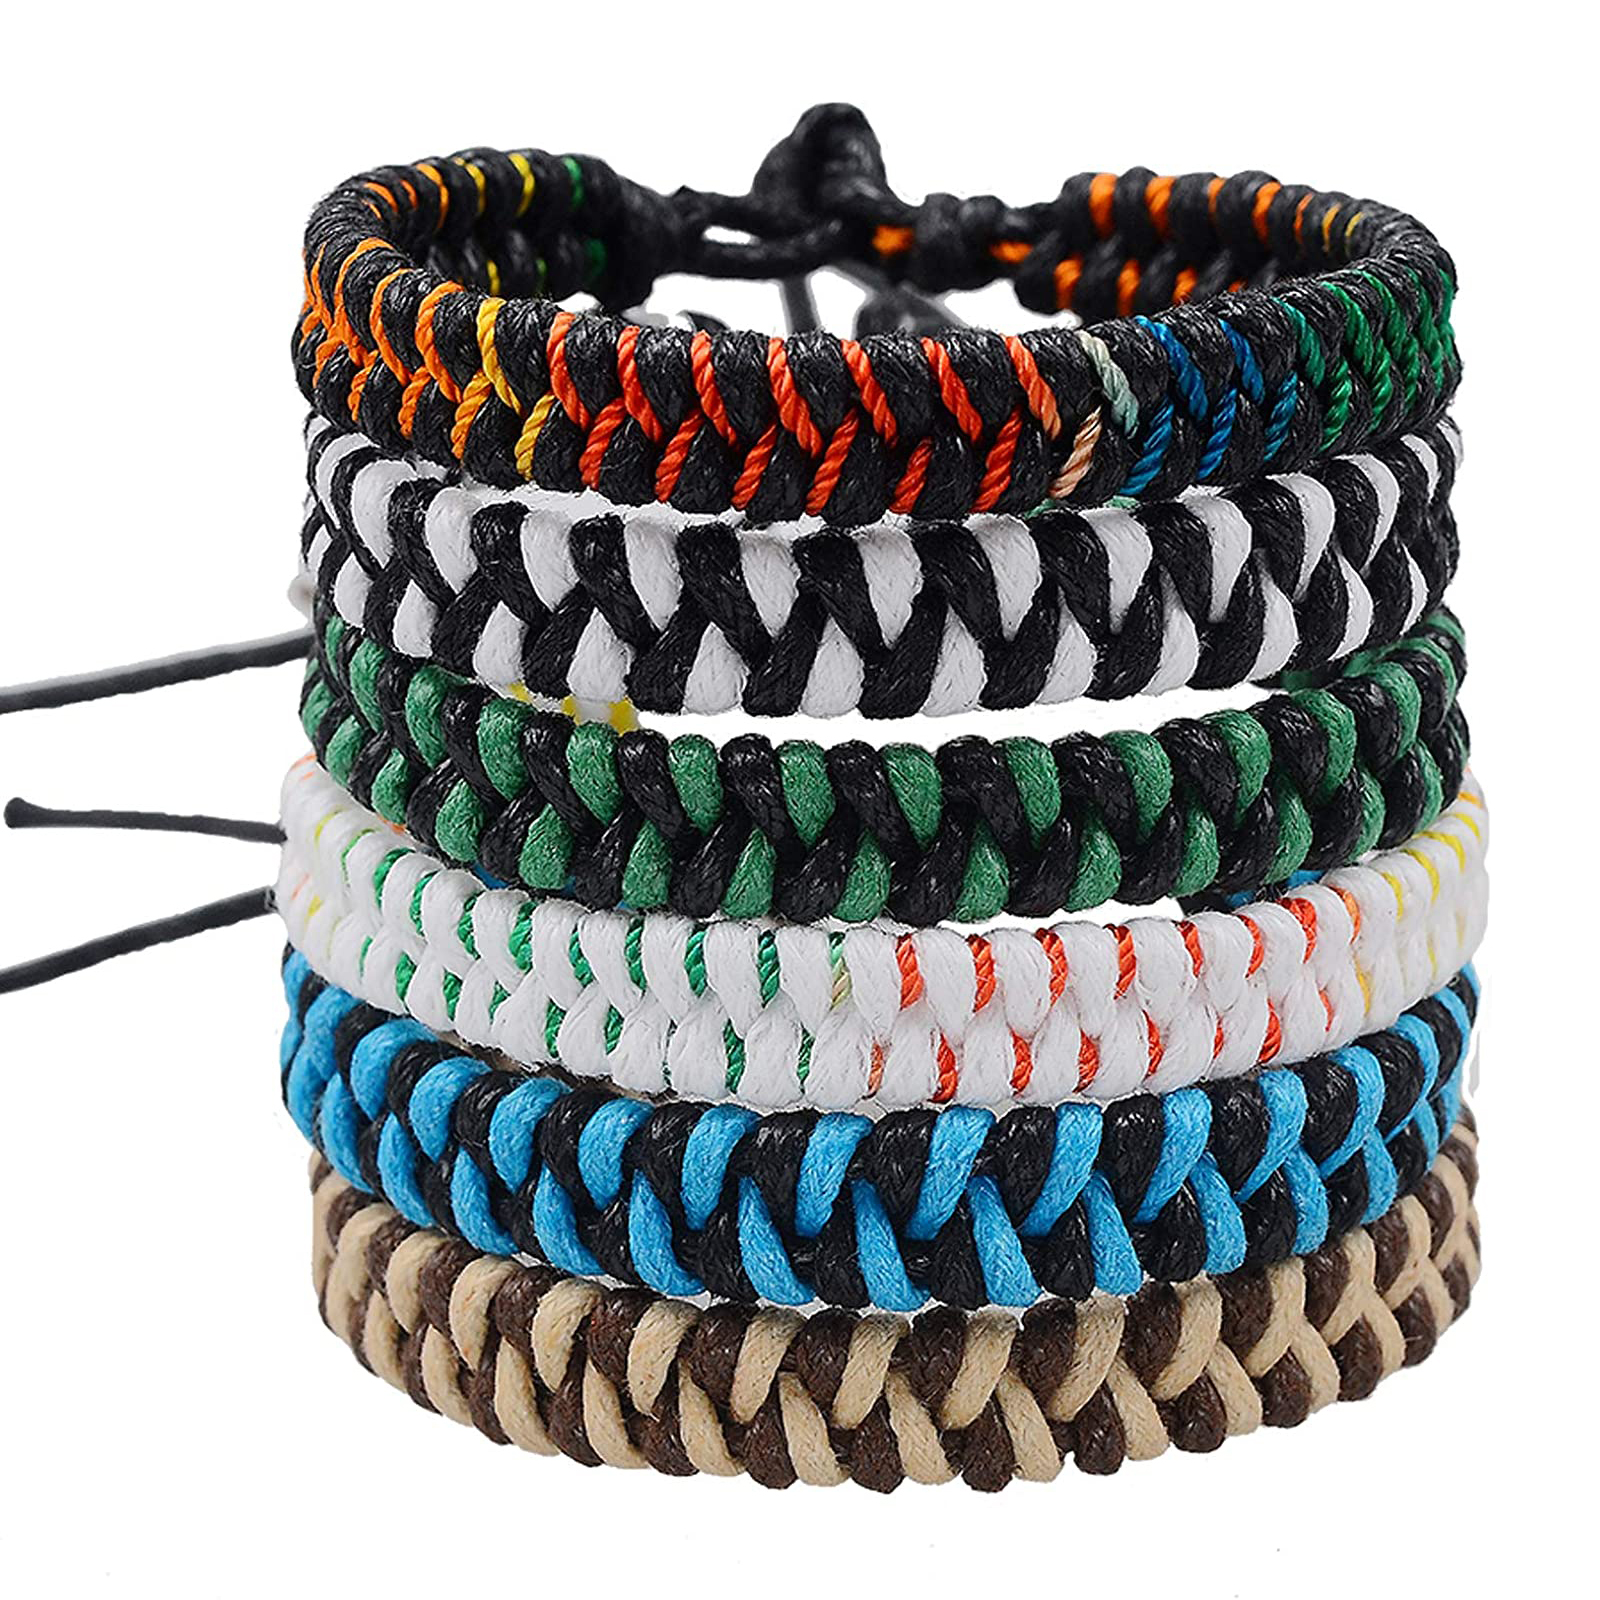 60 Pcs Handmade Braided Friendship Bracelets